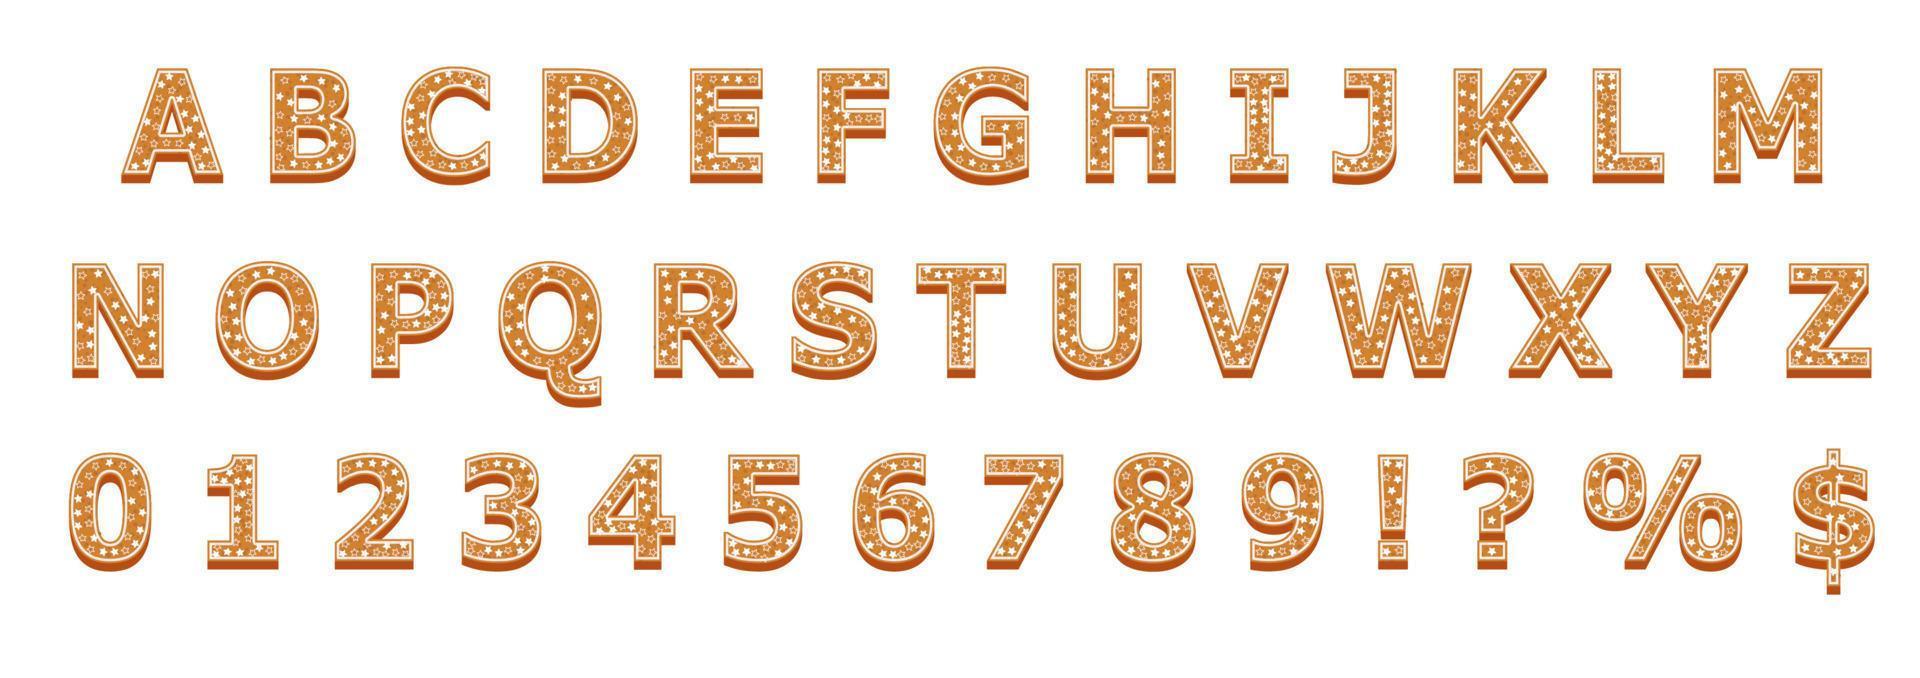 Natale o nuovo anno alfabeto biscotti impostato con Smalto vettore illustrazione. isolato strutturato lettere su bianca sfondo.